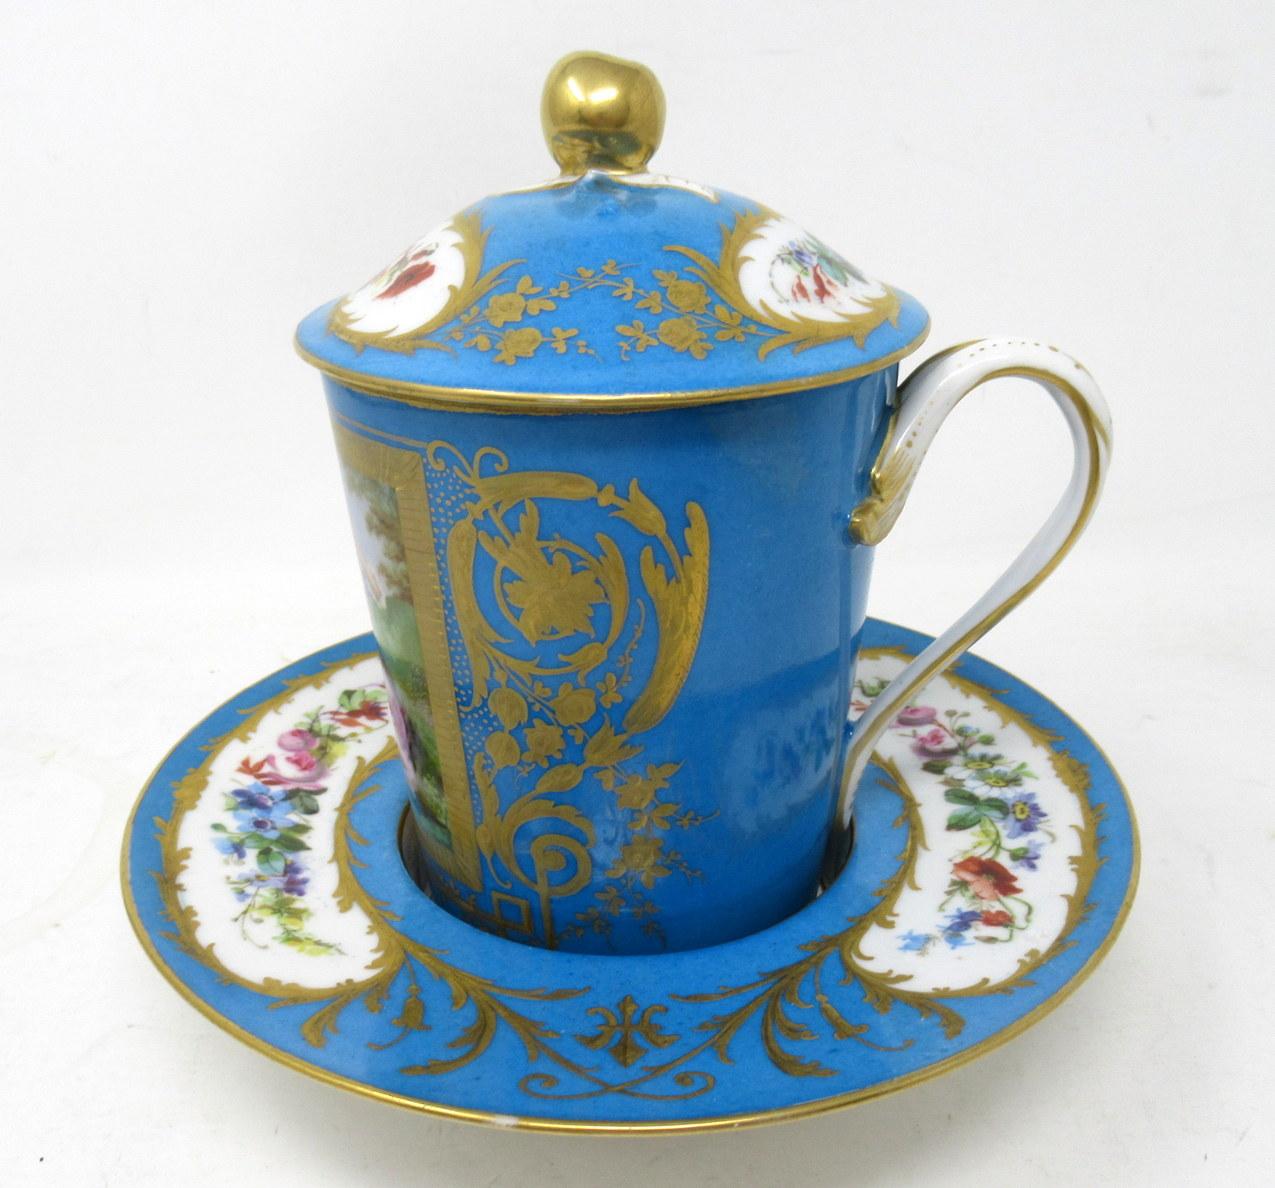 Superbe tasse à chocolat à couvercle en porcelaine de Sèvres, décorée à la main en bleu Céleste, de qualité musée, complète avec son dessous de plat d'origine et son couvercle en forme de dôme avec une pomme feuillue, fabriquée durant la dernière